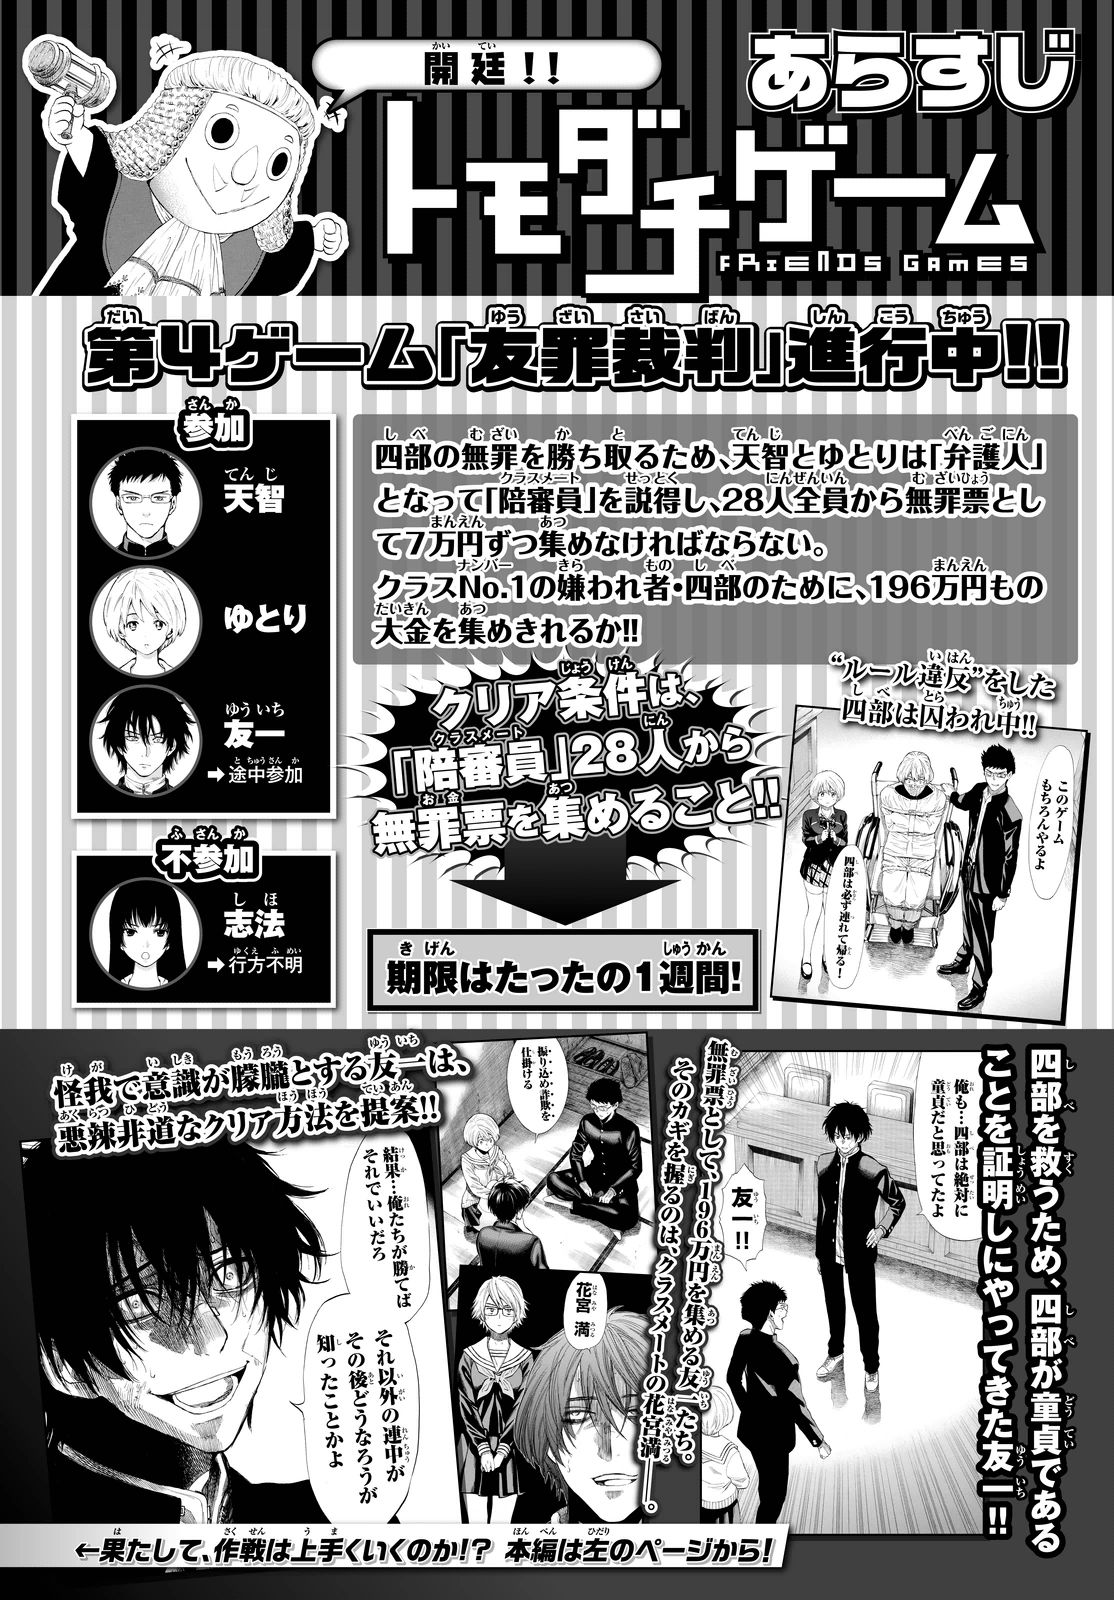 トモダチゲーム 24話 Manga Townまんがタウン まんがまとめ 無料コミック漫画 ネタバレ